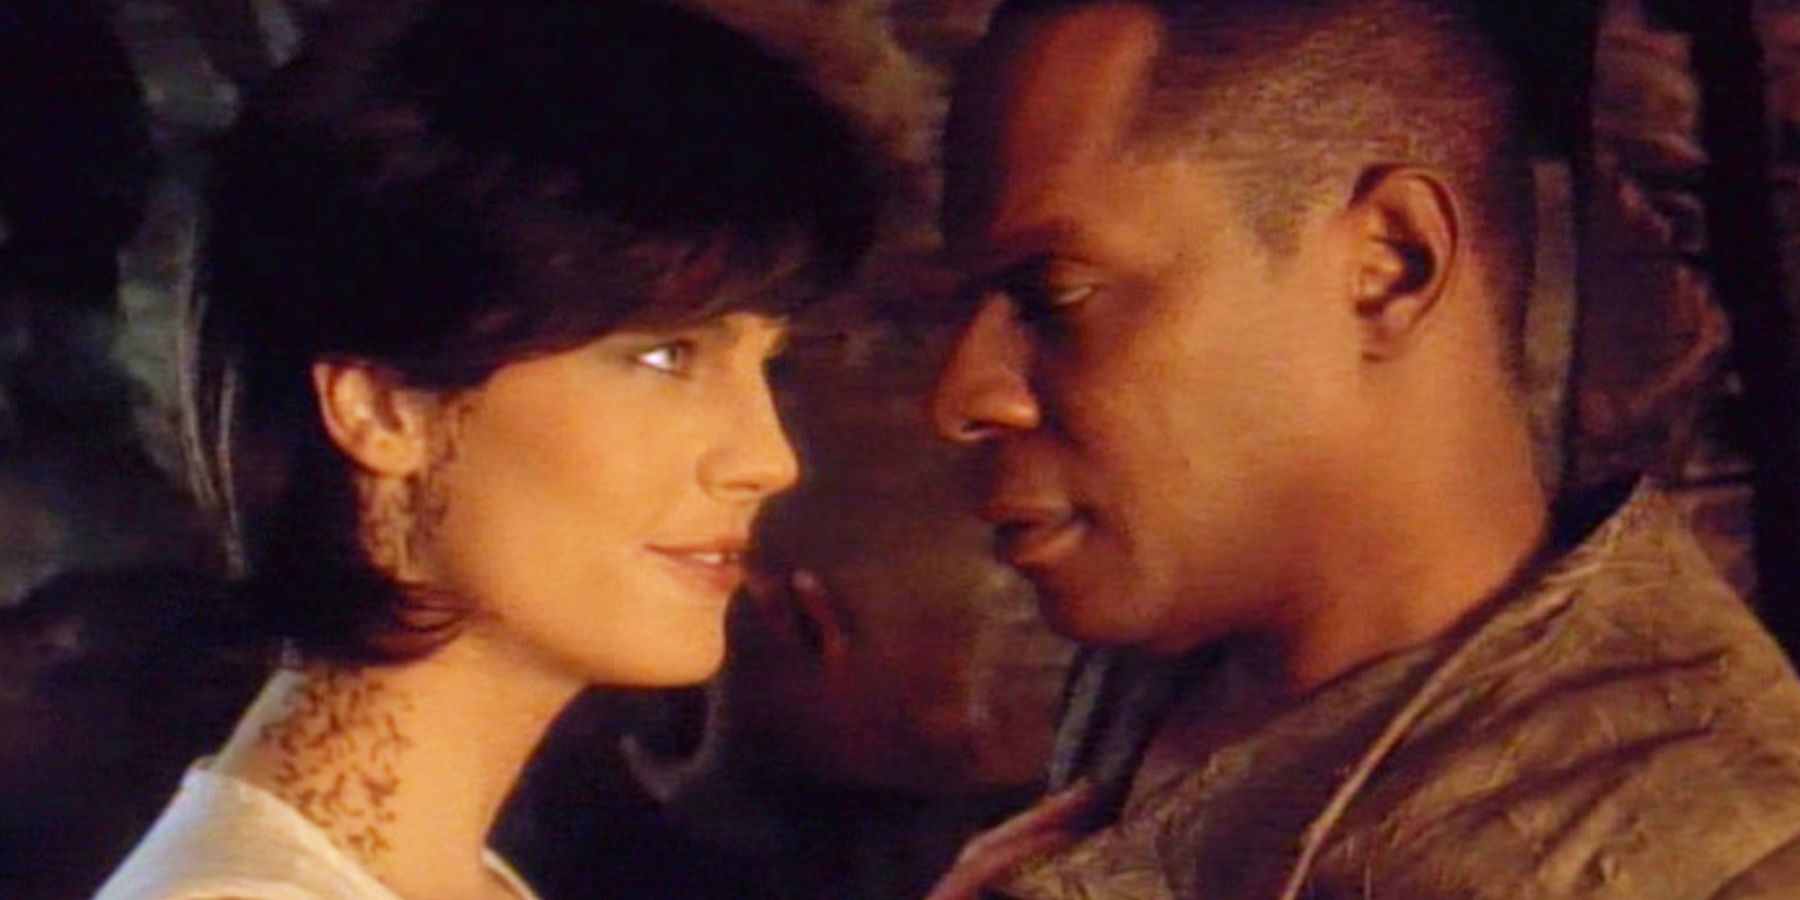 Mirror Jadzia Dax flirts with Sisko in Star Trek: DS9